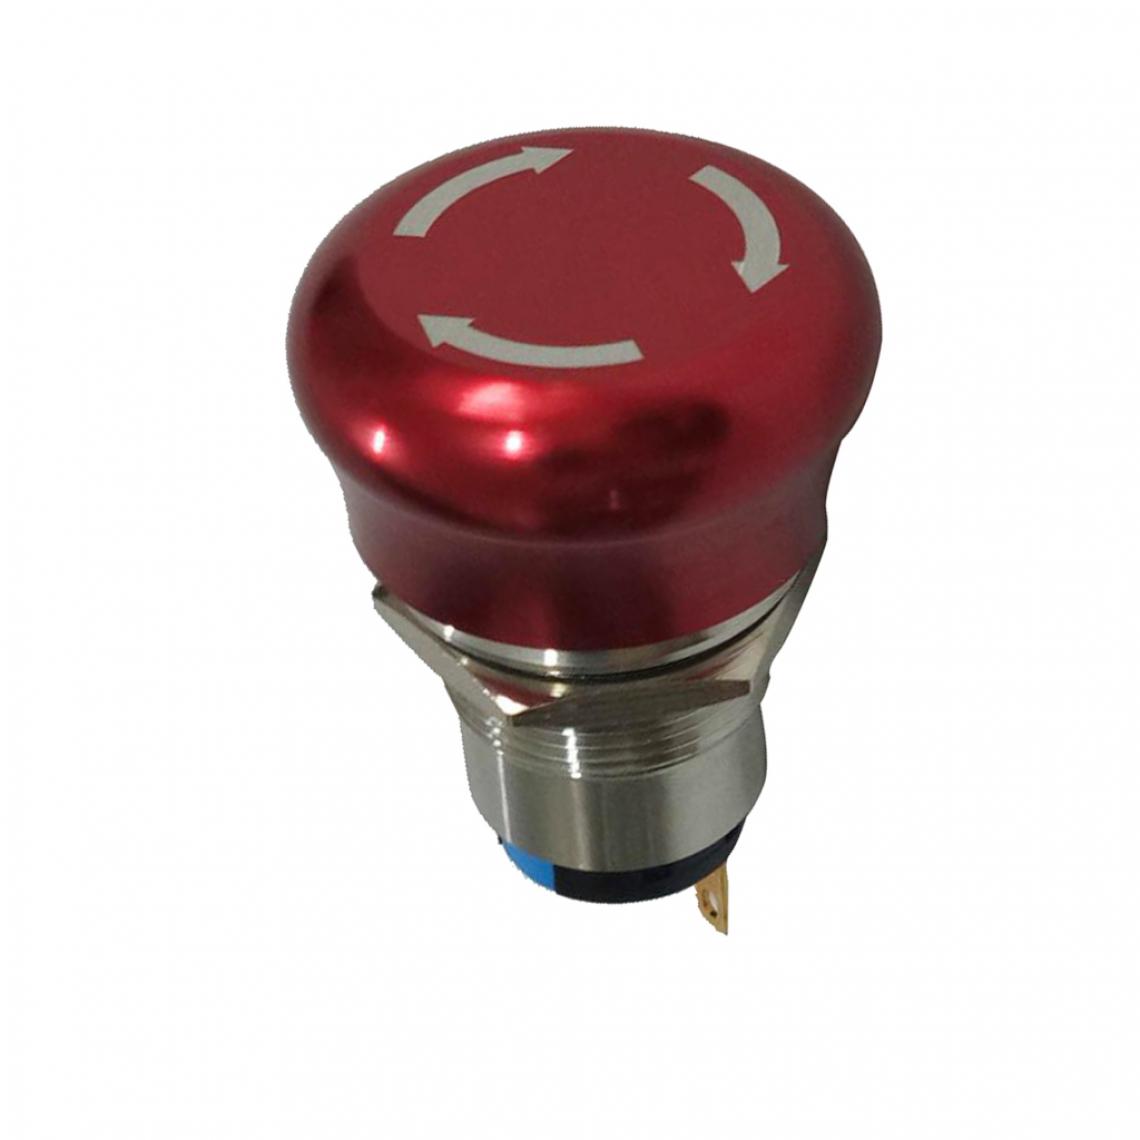 marque generique - AC 220 V 5A 19mm rouge champignon chapeau arrêt d'urgence bouton-poussoir interrupteur 2no 2nc - Switch